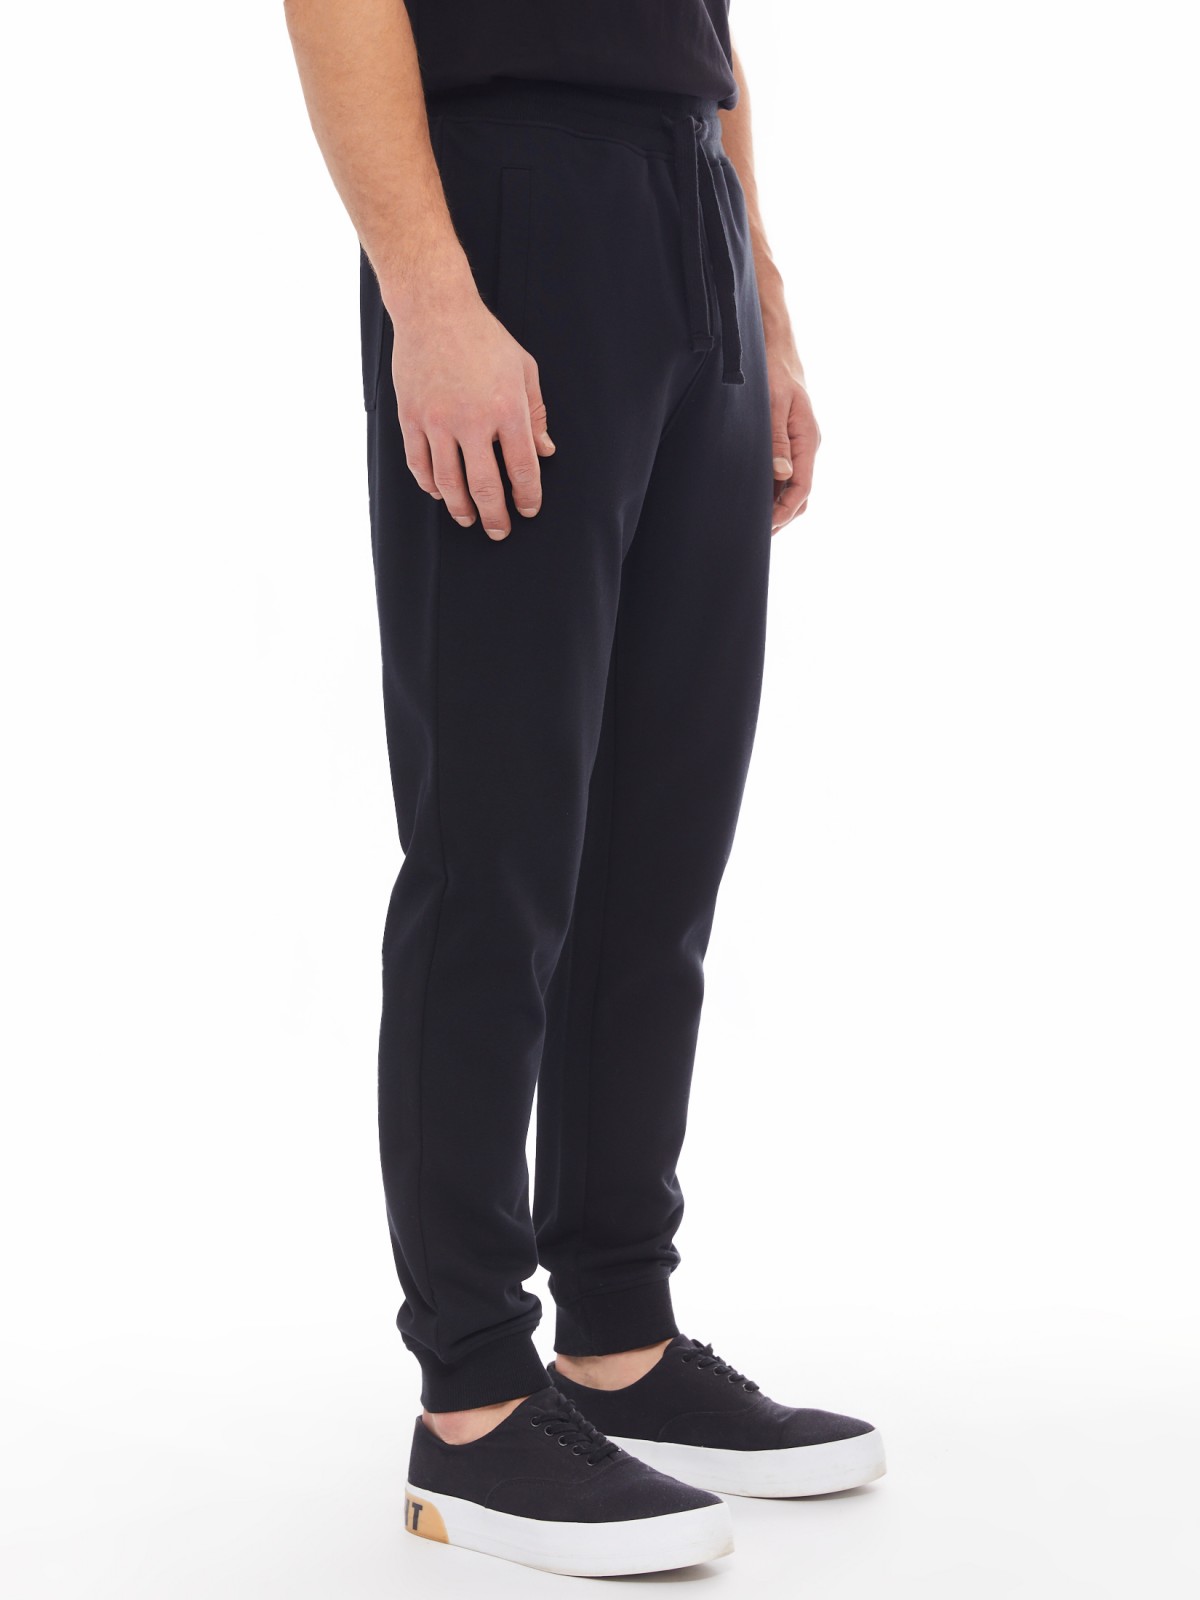 Трикотажные брюки-джоггеры в спортивном стиле zolla 014137675022, цвет черный, размер S - фото 3